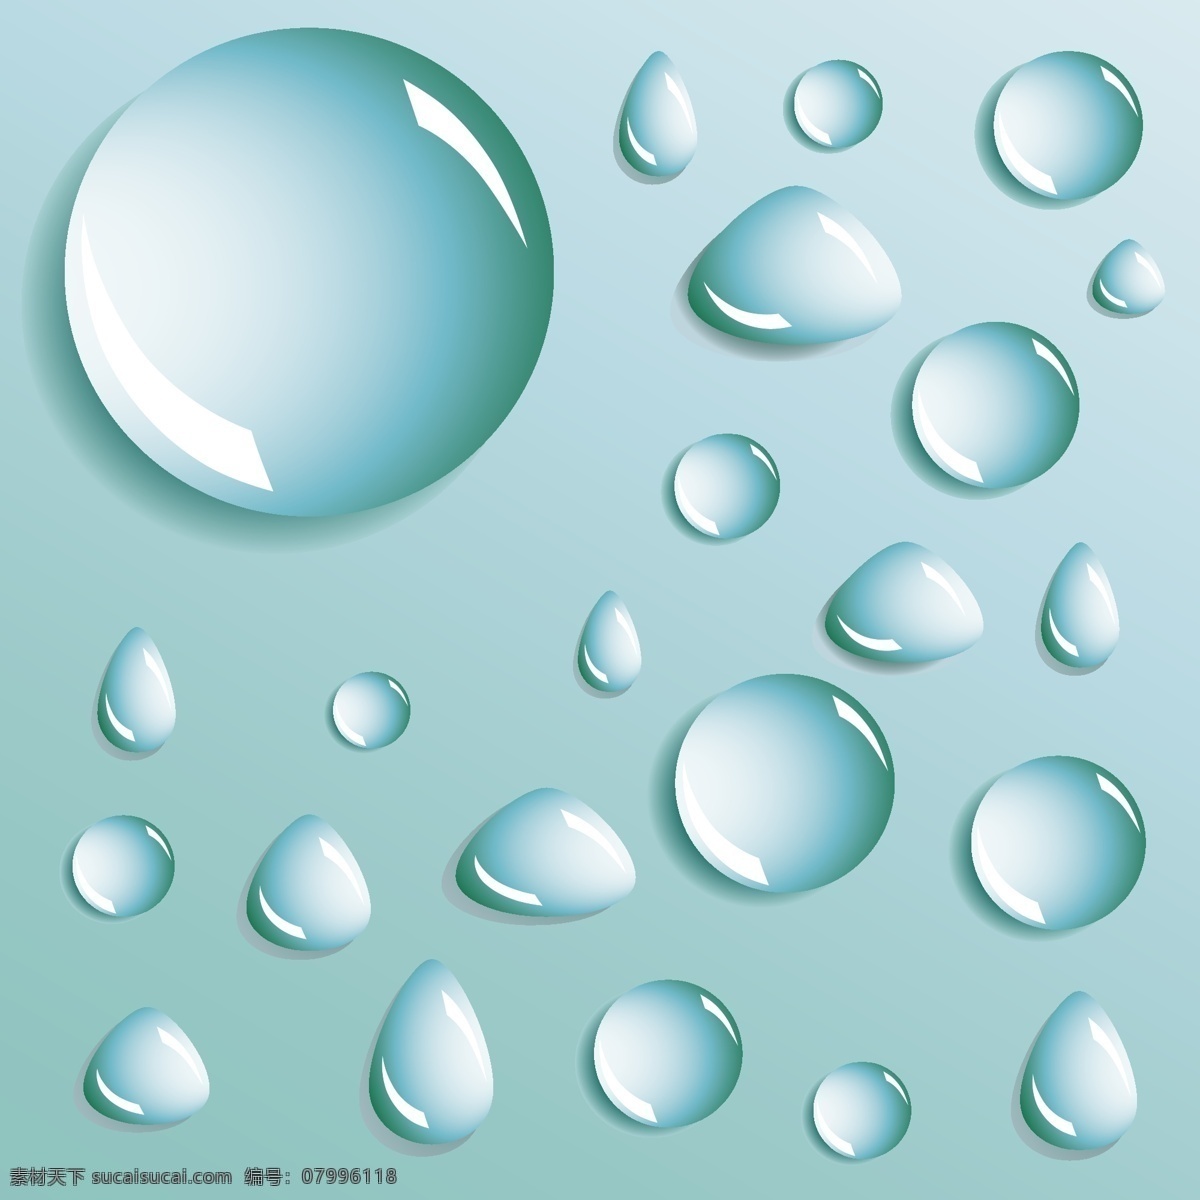 不同 形状 水滴 滴水 水滴矢量 不同的 不同的形状 形状的水 水 水液滴 滴 水滴水滴向量 向量的水滴 矢量图 其他矢量图